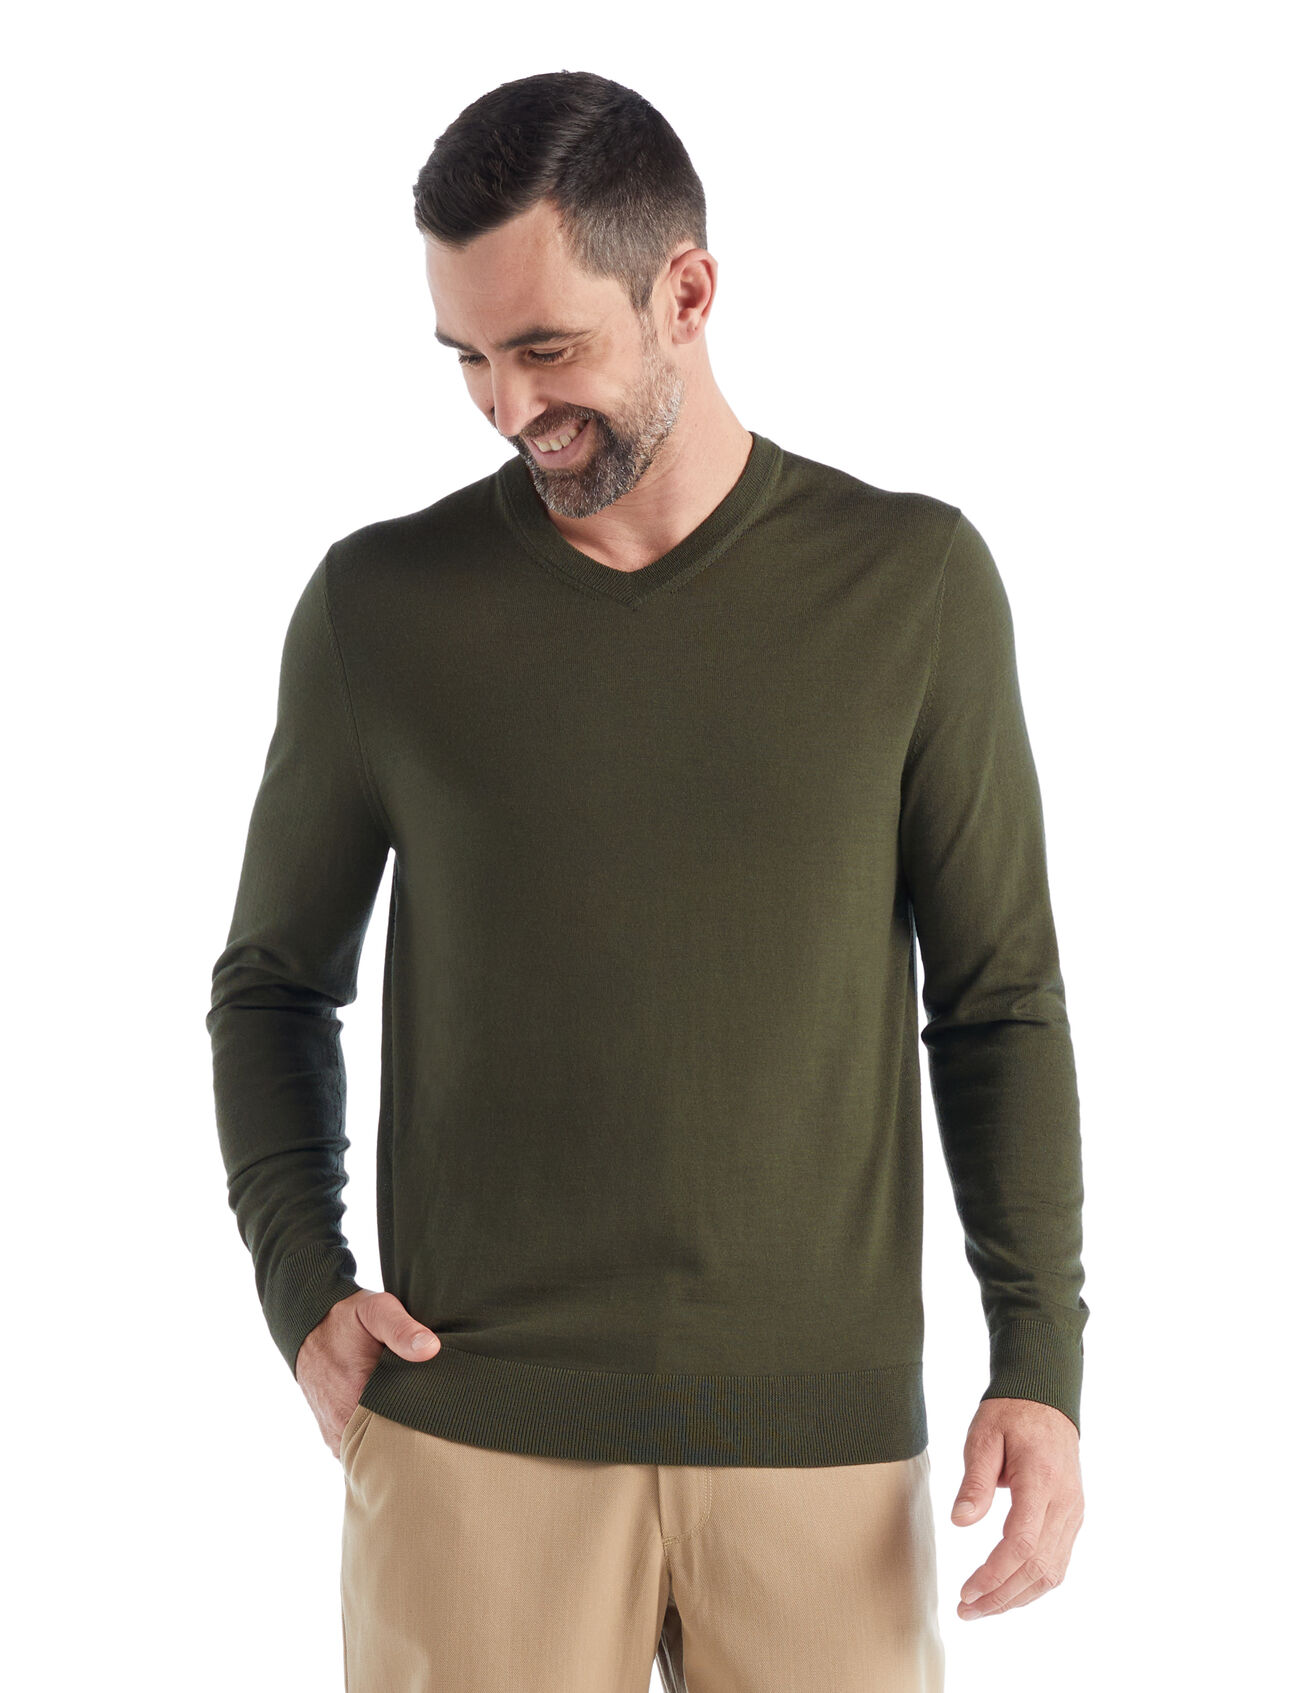 dla mężczyzn Sweter Wilcox z długim rękawem z wełny merino Klasyczny sweter na co dzień wykonany z niezwykle cienkiej wełny merino, która zapewnia niezrównaną miękkość. Sweter Wilcox z długim rękawem i trójkątnym dekoltem doskonale sprawdzi się w dni, kiedy potrzebujesz lekkiej dodatkowej warstwy.